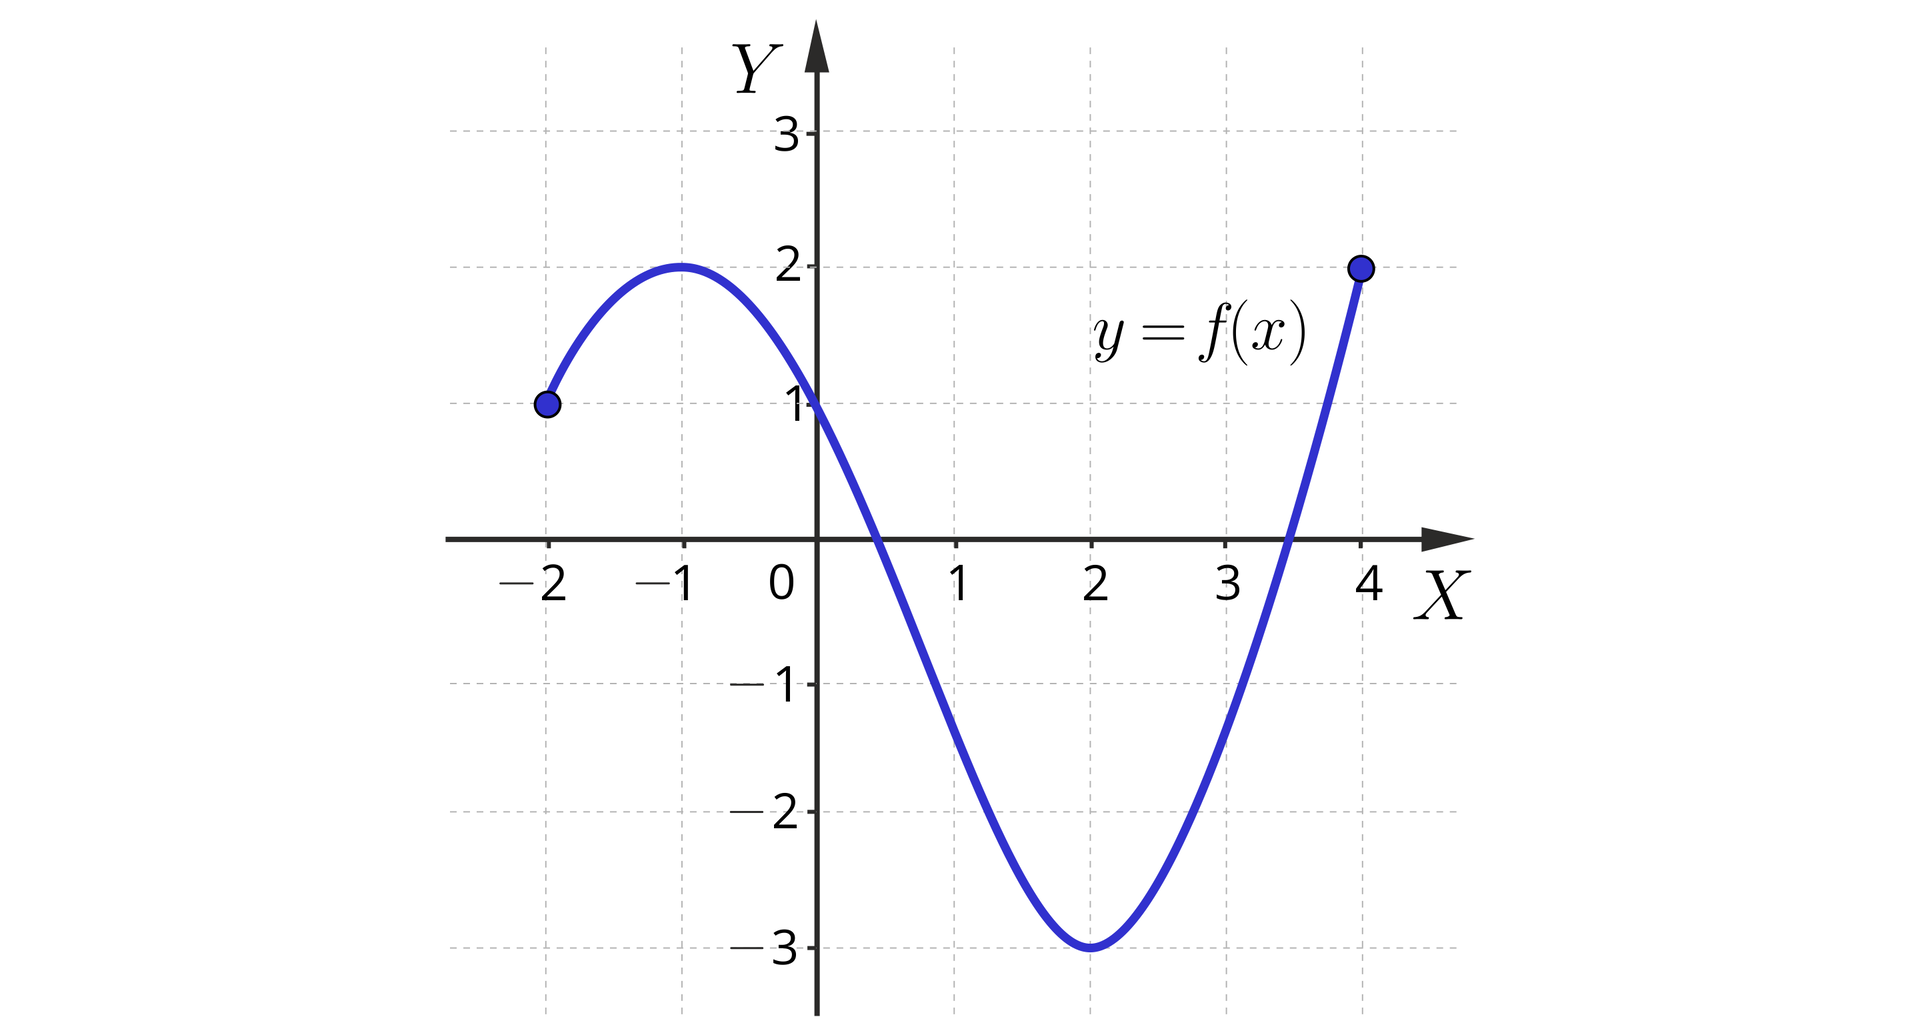 Ilustracja przedstawiająca współrzędnych wraz z opisanymi osiami. Poziomą X oraz pionową Y. Na osi poziomej zaznaczono argumenty od minus dwóch do czterech, zaś na osi pionowej wartości od minus trzech do trzech. W układzie przedstawiono wykres funkcji f od x, który stanowi podwójnie wybrzuszony łuk, którego pierwszy koniec znajduje się w drugiej ćwiartce w w punkcie o współrzędnych minus 2, 1;  zaś drugi koniec w punkcie o współrzędnych 4, 2 znajdującym się w pierwszej ćwiartce układu. Pierwsze wybrzuszenie znajduje się w drugiej ćwiartce, gdzie od punkty początkowego łuk biegnie ku górze aż do wybrzuszenia w punkcie o współrzędnych minus 1, 0, a następnie wykres kieruje się do trzeciej ćwiartki, przechodząc między innymi przez punkt o współrzędnych 0, 1, dociera do drugiego wybrzuszenia w punkcie o współrzędnych 2, minus 3, a następnie  kieruje się do ćwiartki pierwszej, do wspomnianego już punktu końcowego o współrzędnych 4, dwa.